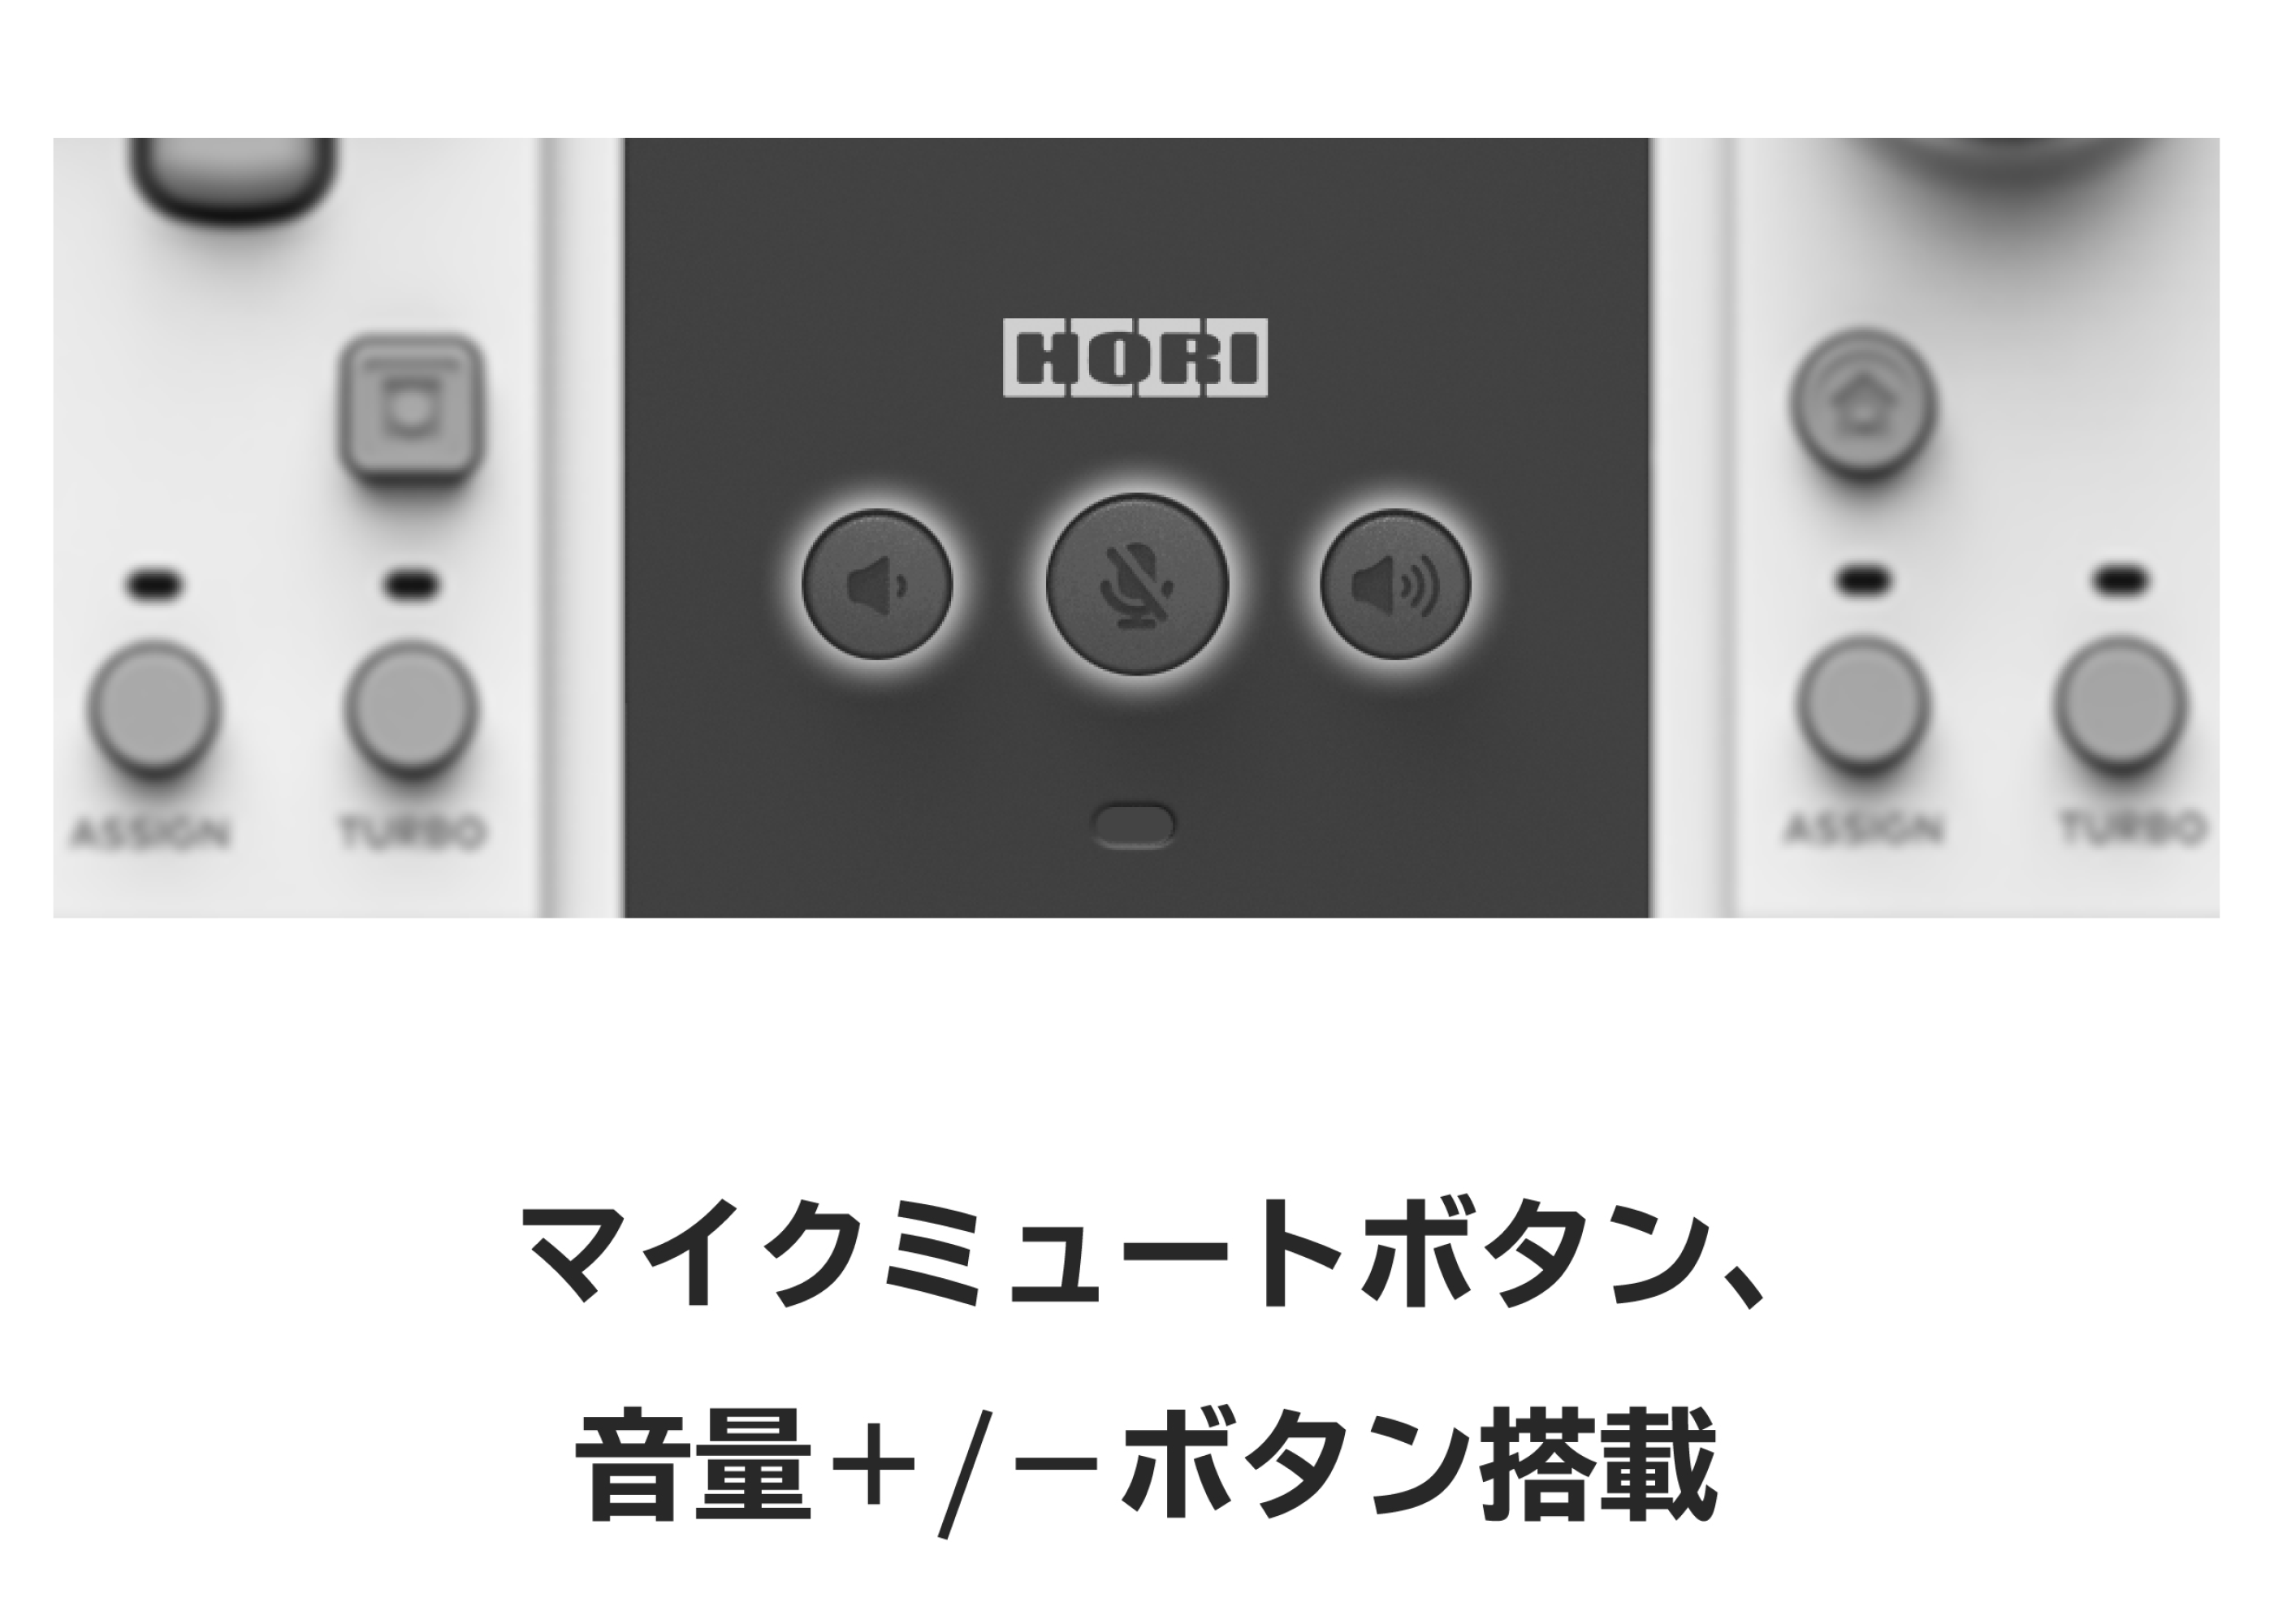 HORI STORE / グリップコントローラーシリーズ専用 アタッチメント for